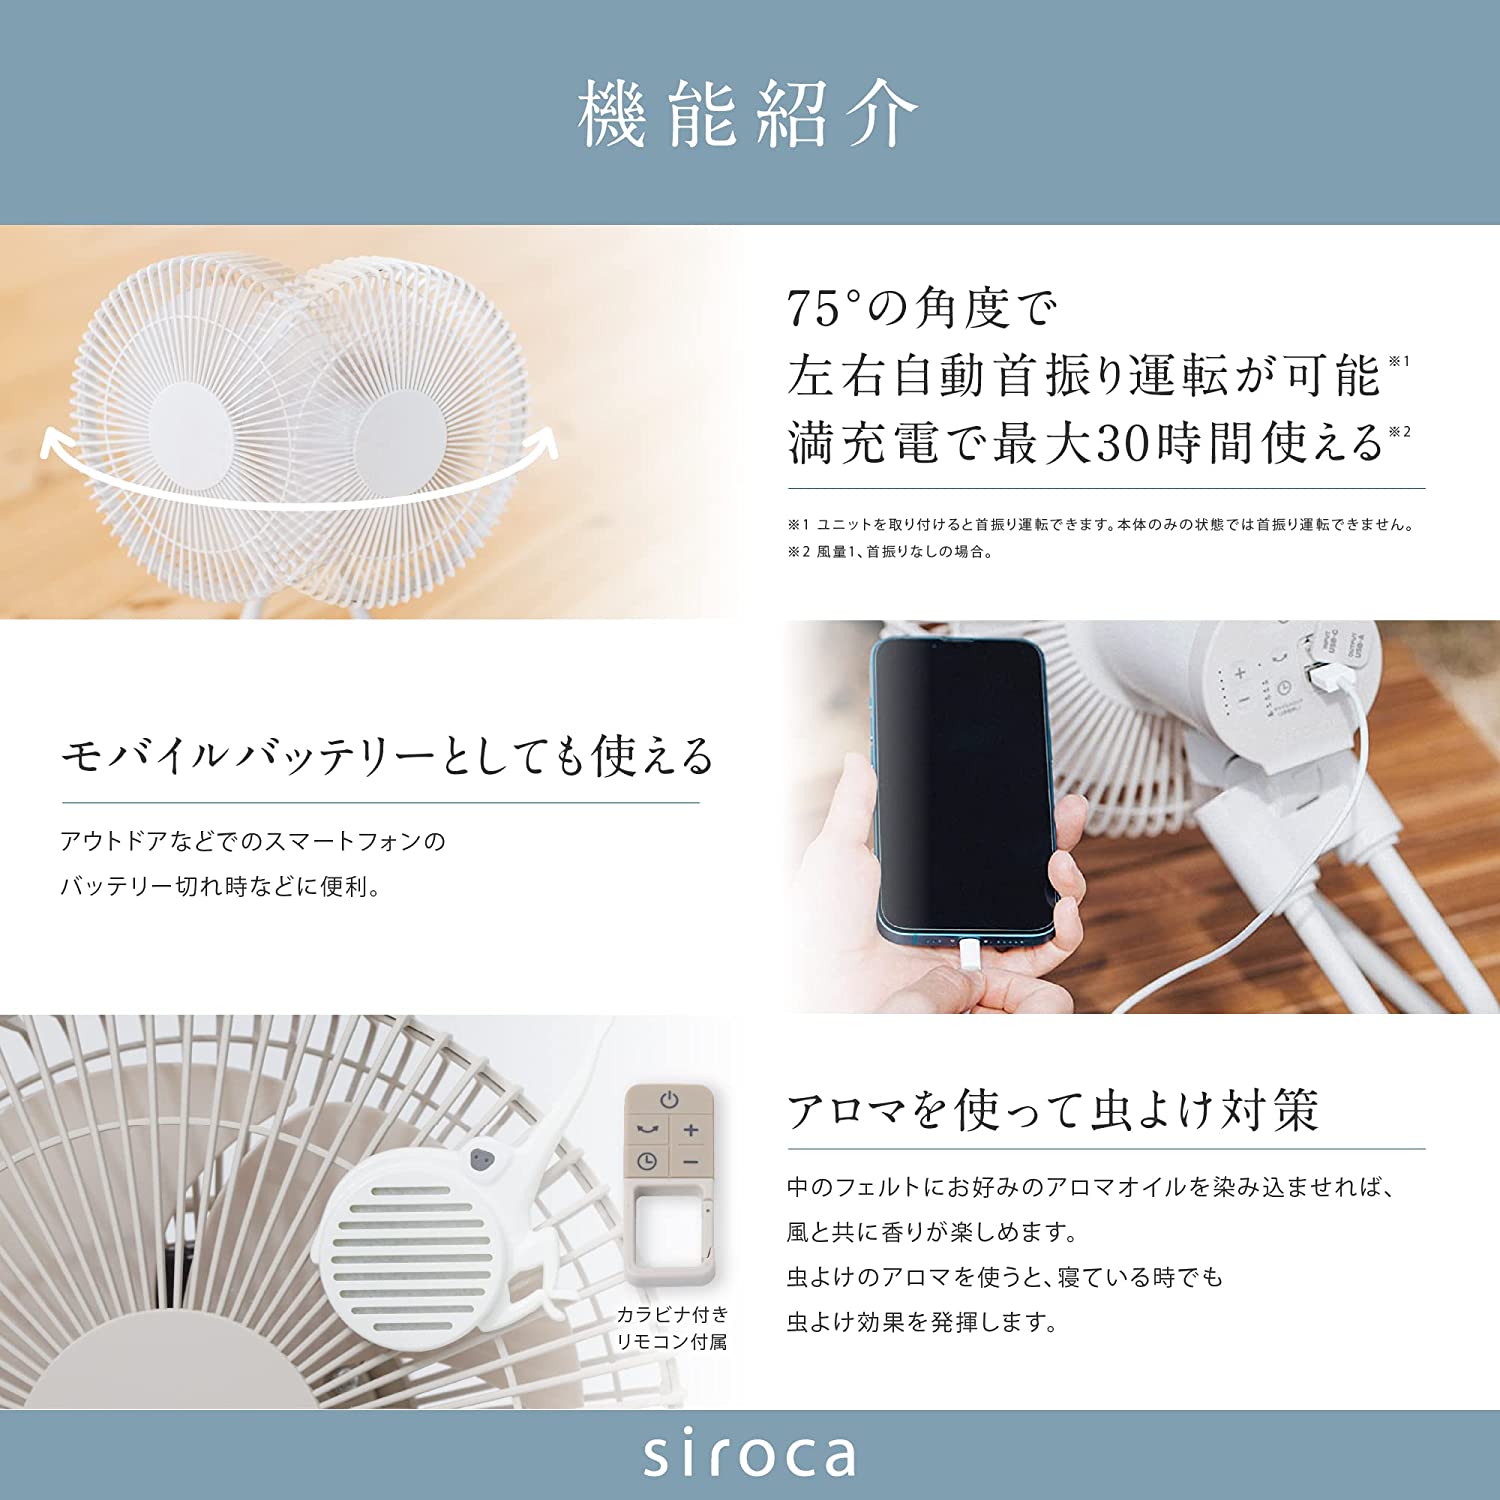 コードレス扇風機 ANDON(アンドン) FAN SF-PC171 | シロカ 